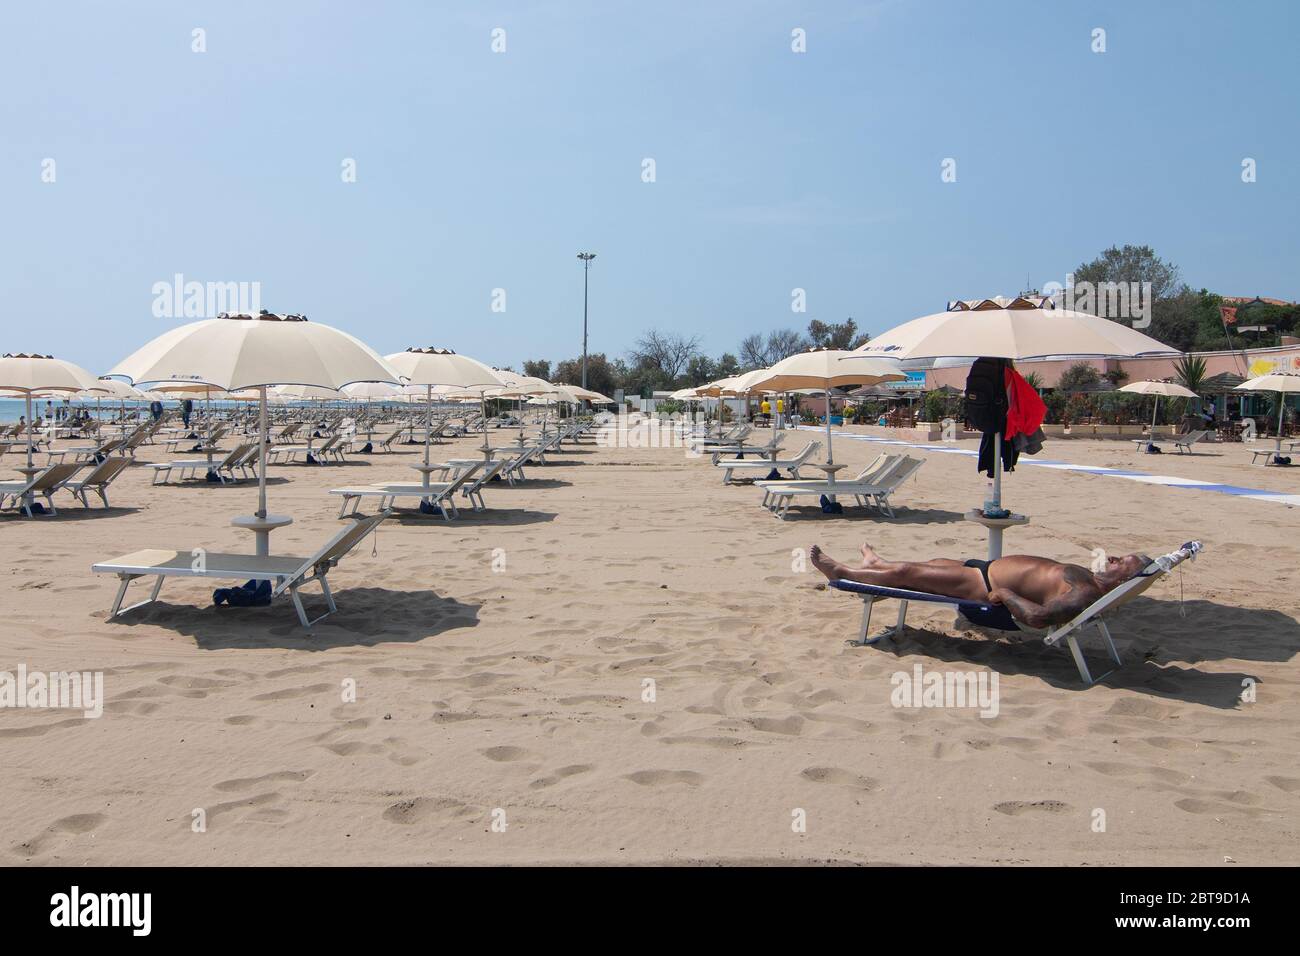 VENISE, ITALIE - MAI: Les gens sont vus comme des plages rouvrent à Lido le 23 mai 2020 à Venise, Italie. Les plages de la région de Vénétie ont rouvert, sous réserve de cela Banque D'Images